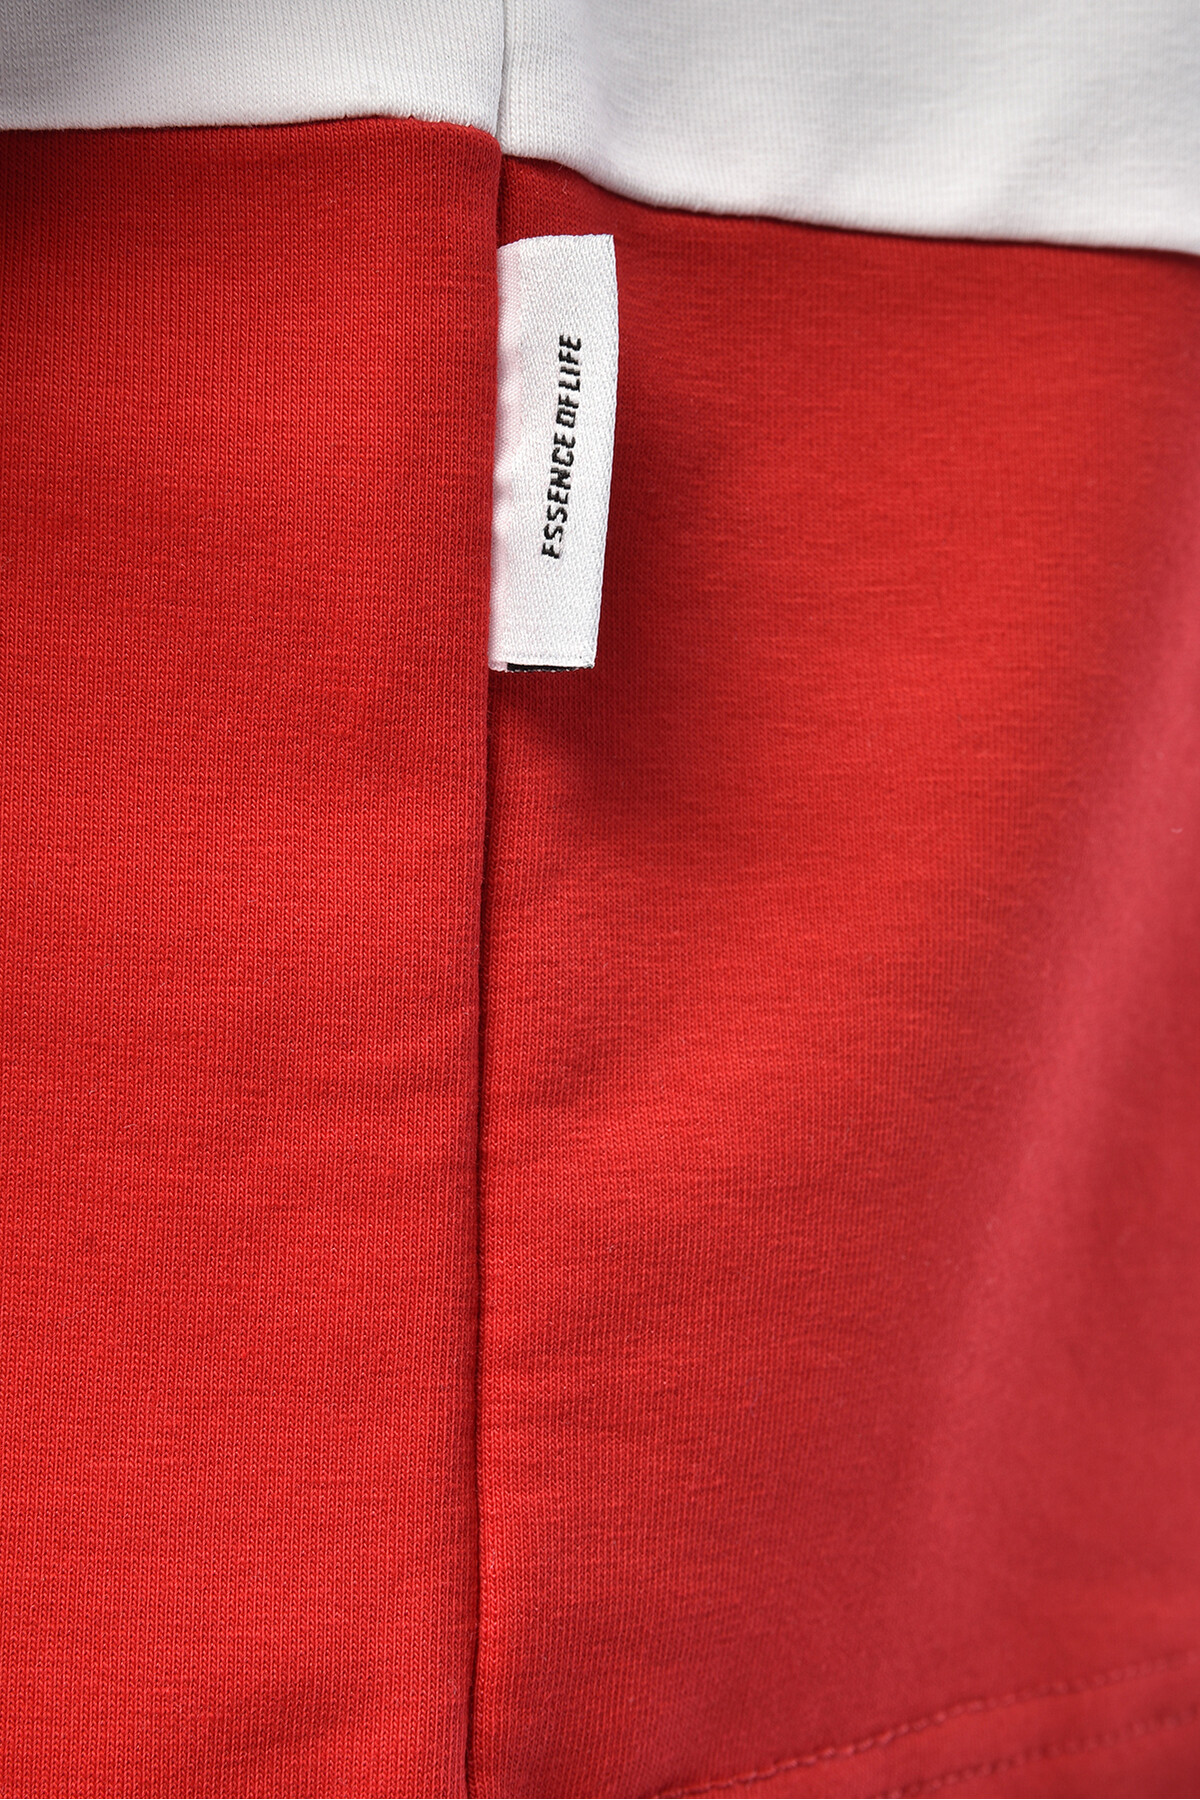 Haki  Şeritli Polo Yaka Overasize T-Shirt Kırmızı